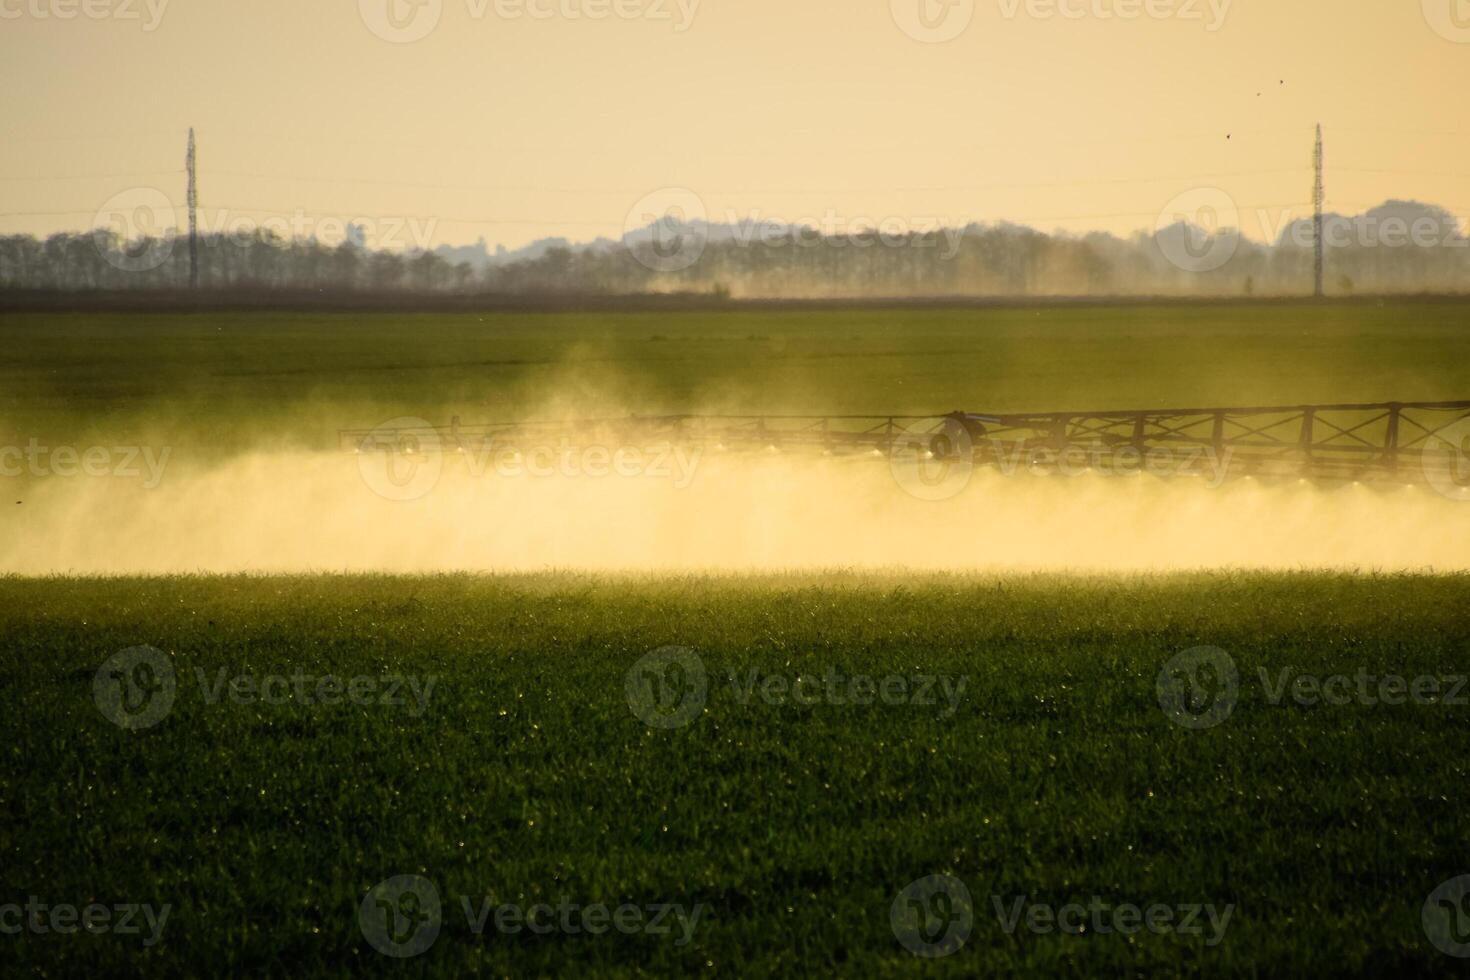 jets av flytande gödselmedel från de traktor spruta. foto